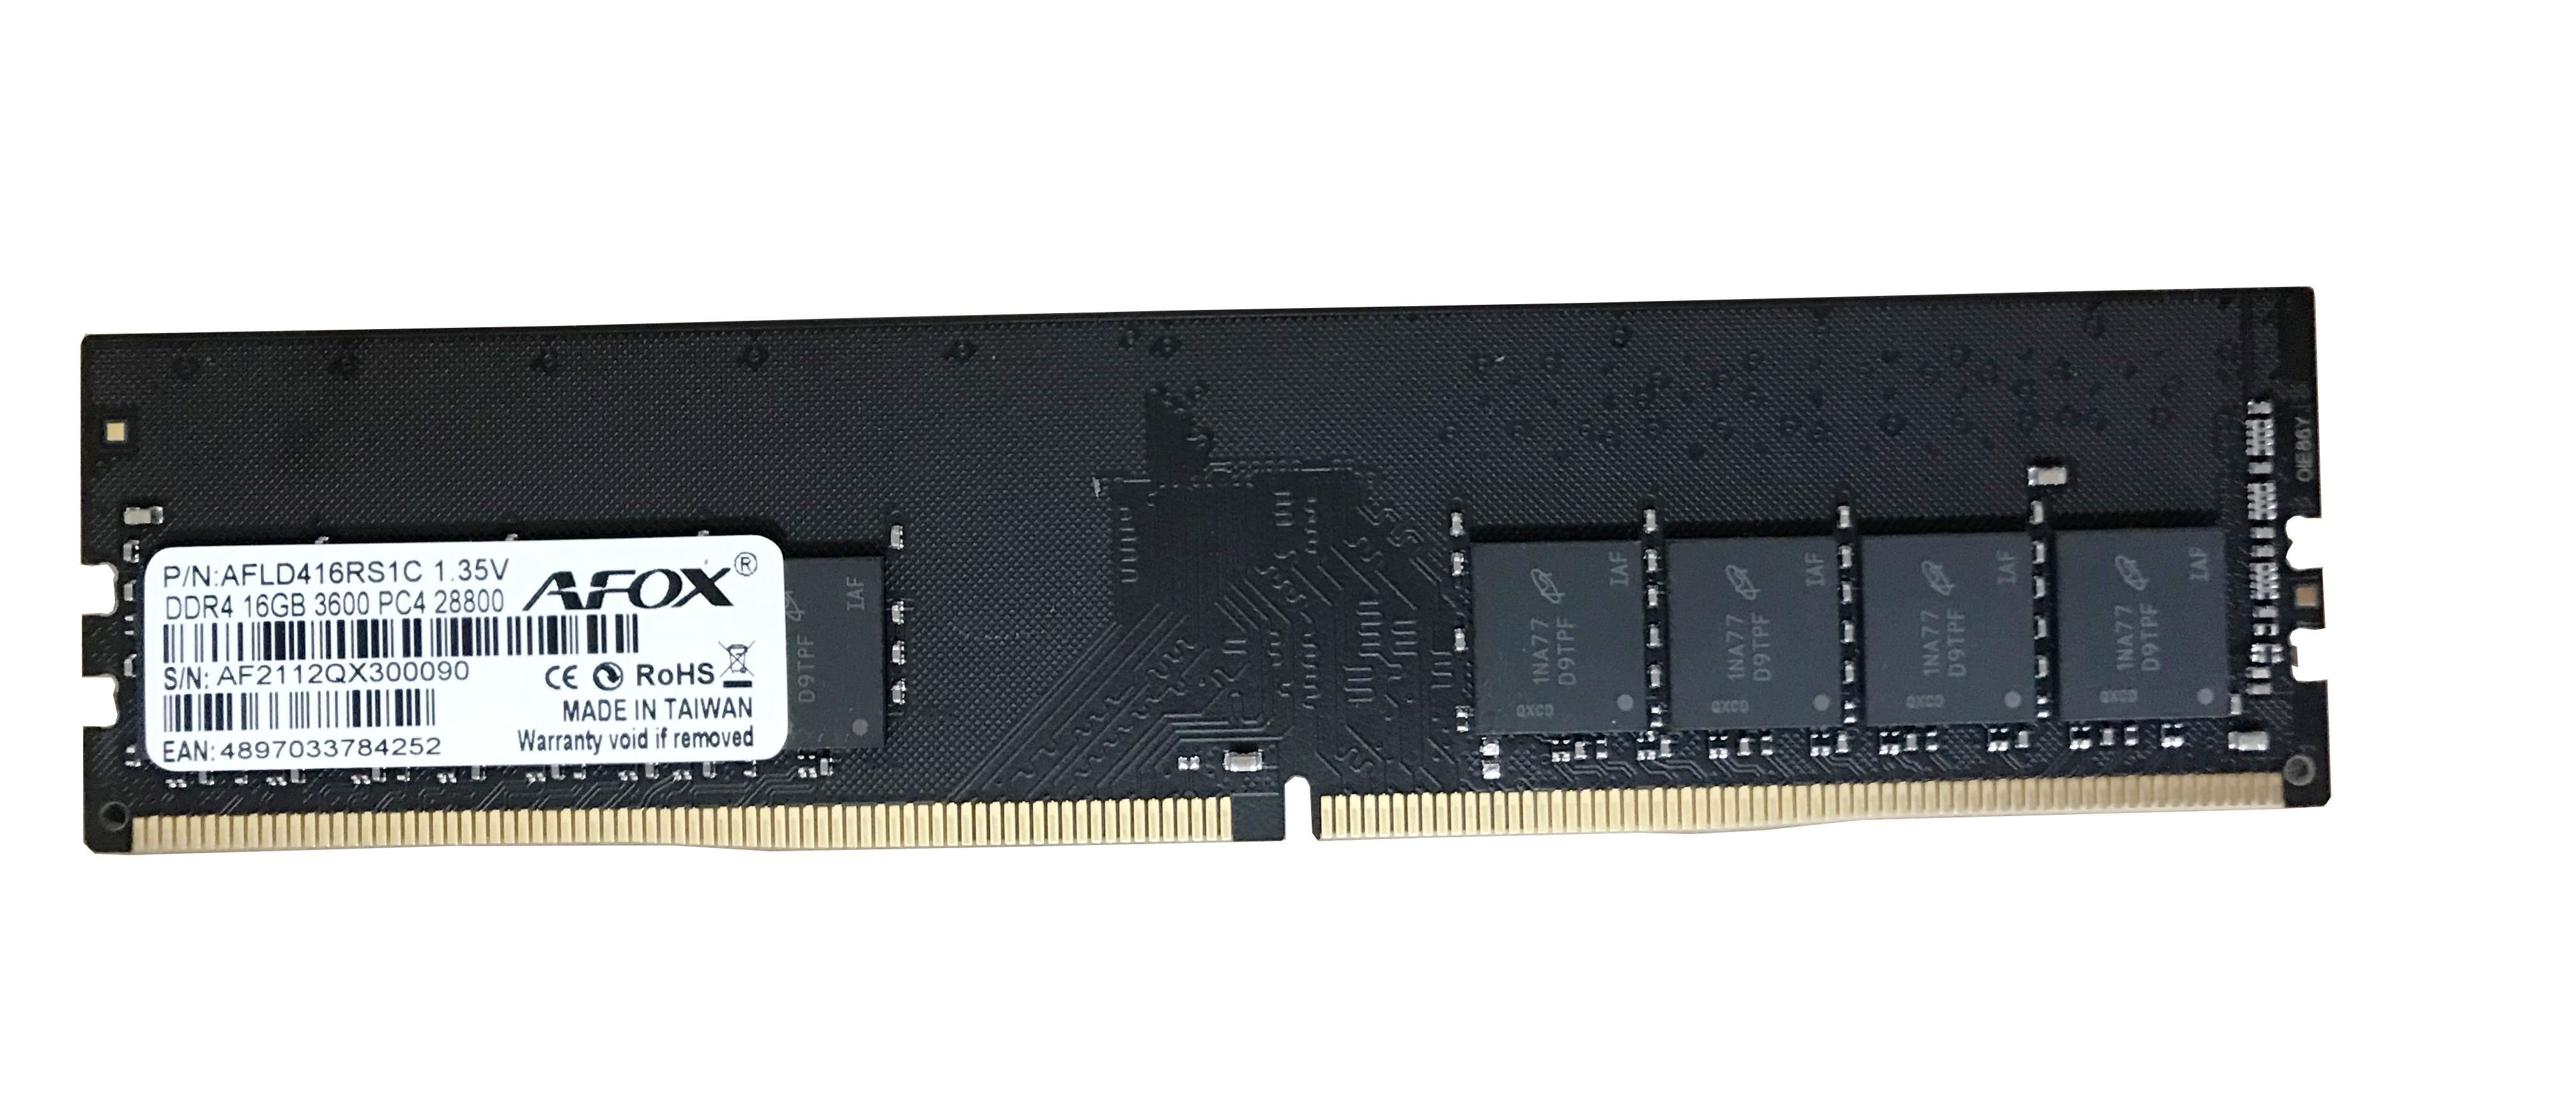 AFOX AFLD416RS1C 16GB 3600MHZ DDR4 UDIMM RAM